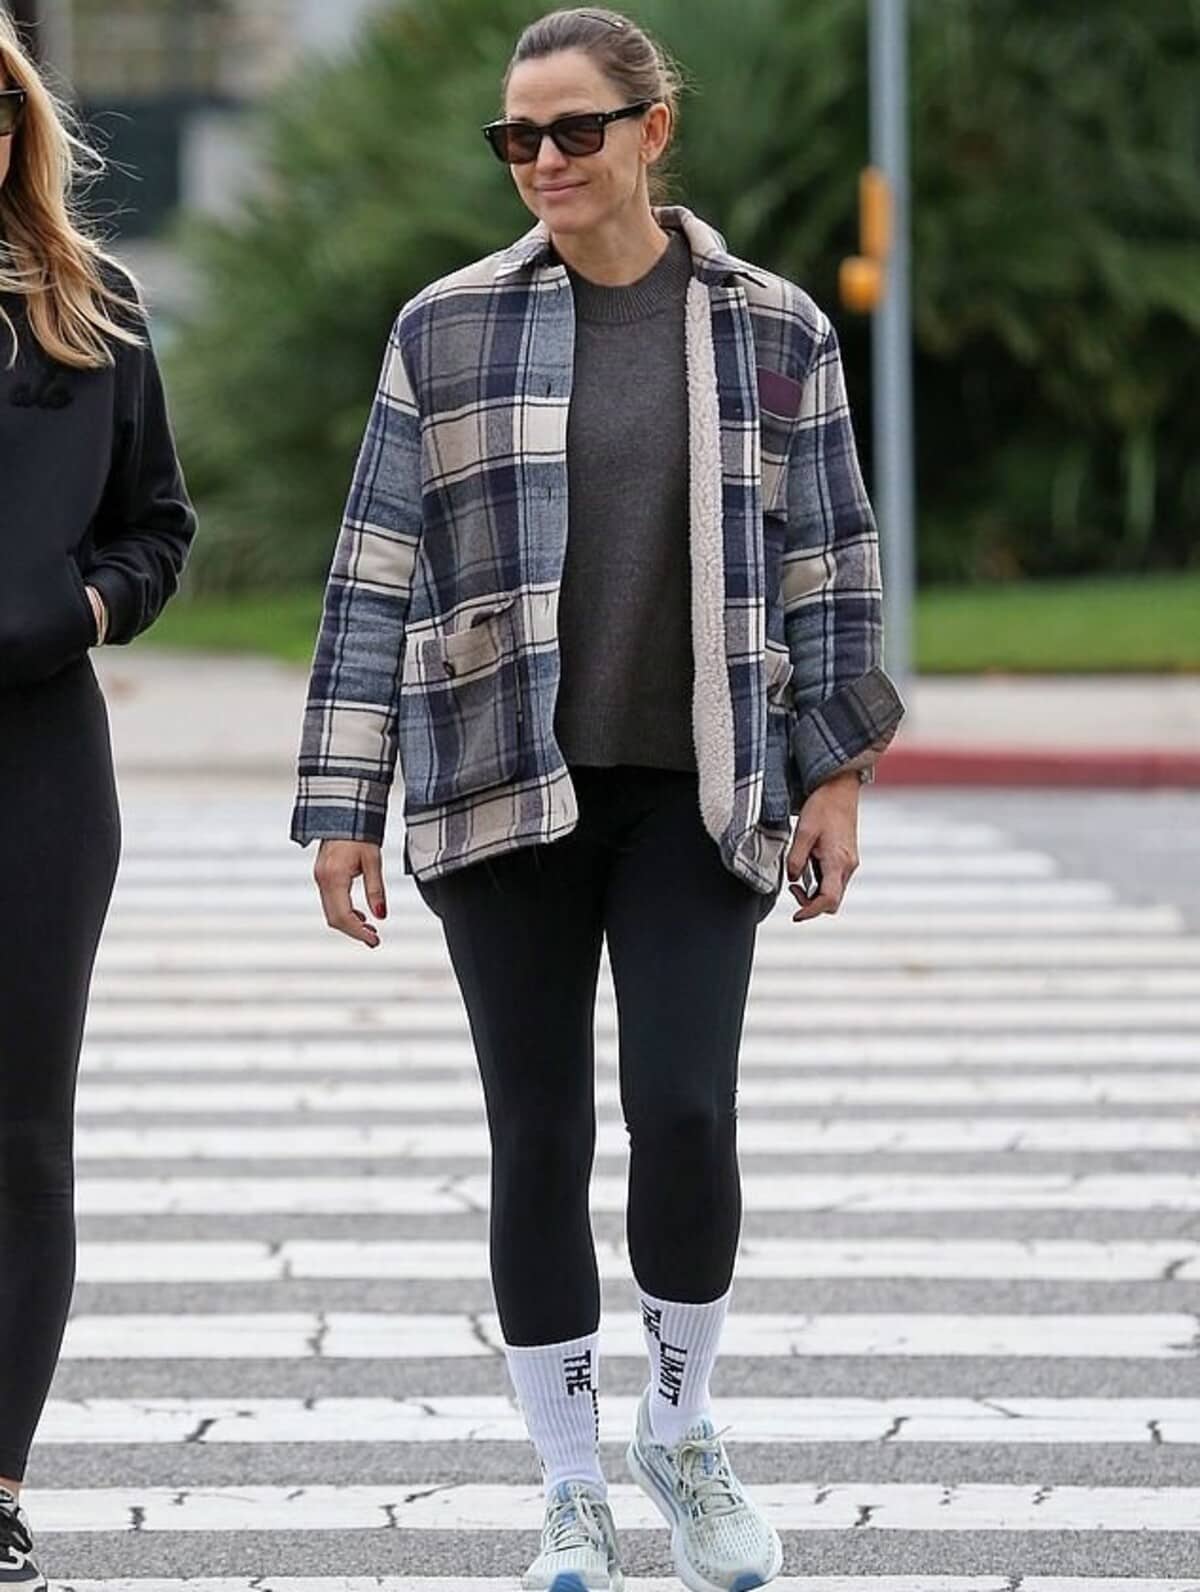 Jennifer Garner models a plaid jacket over workout clothes.